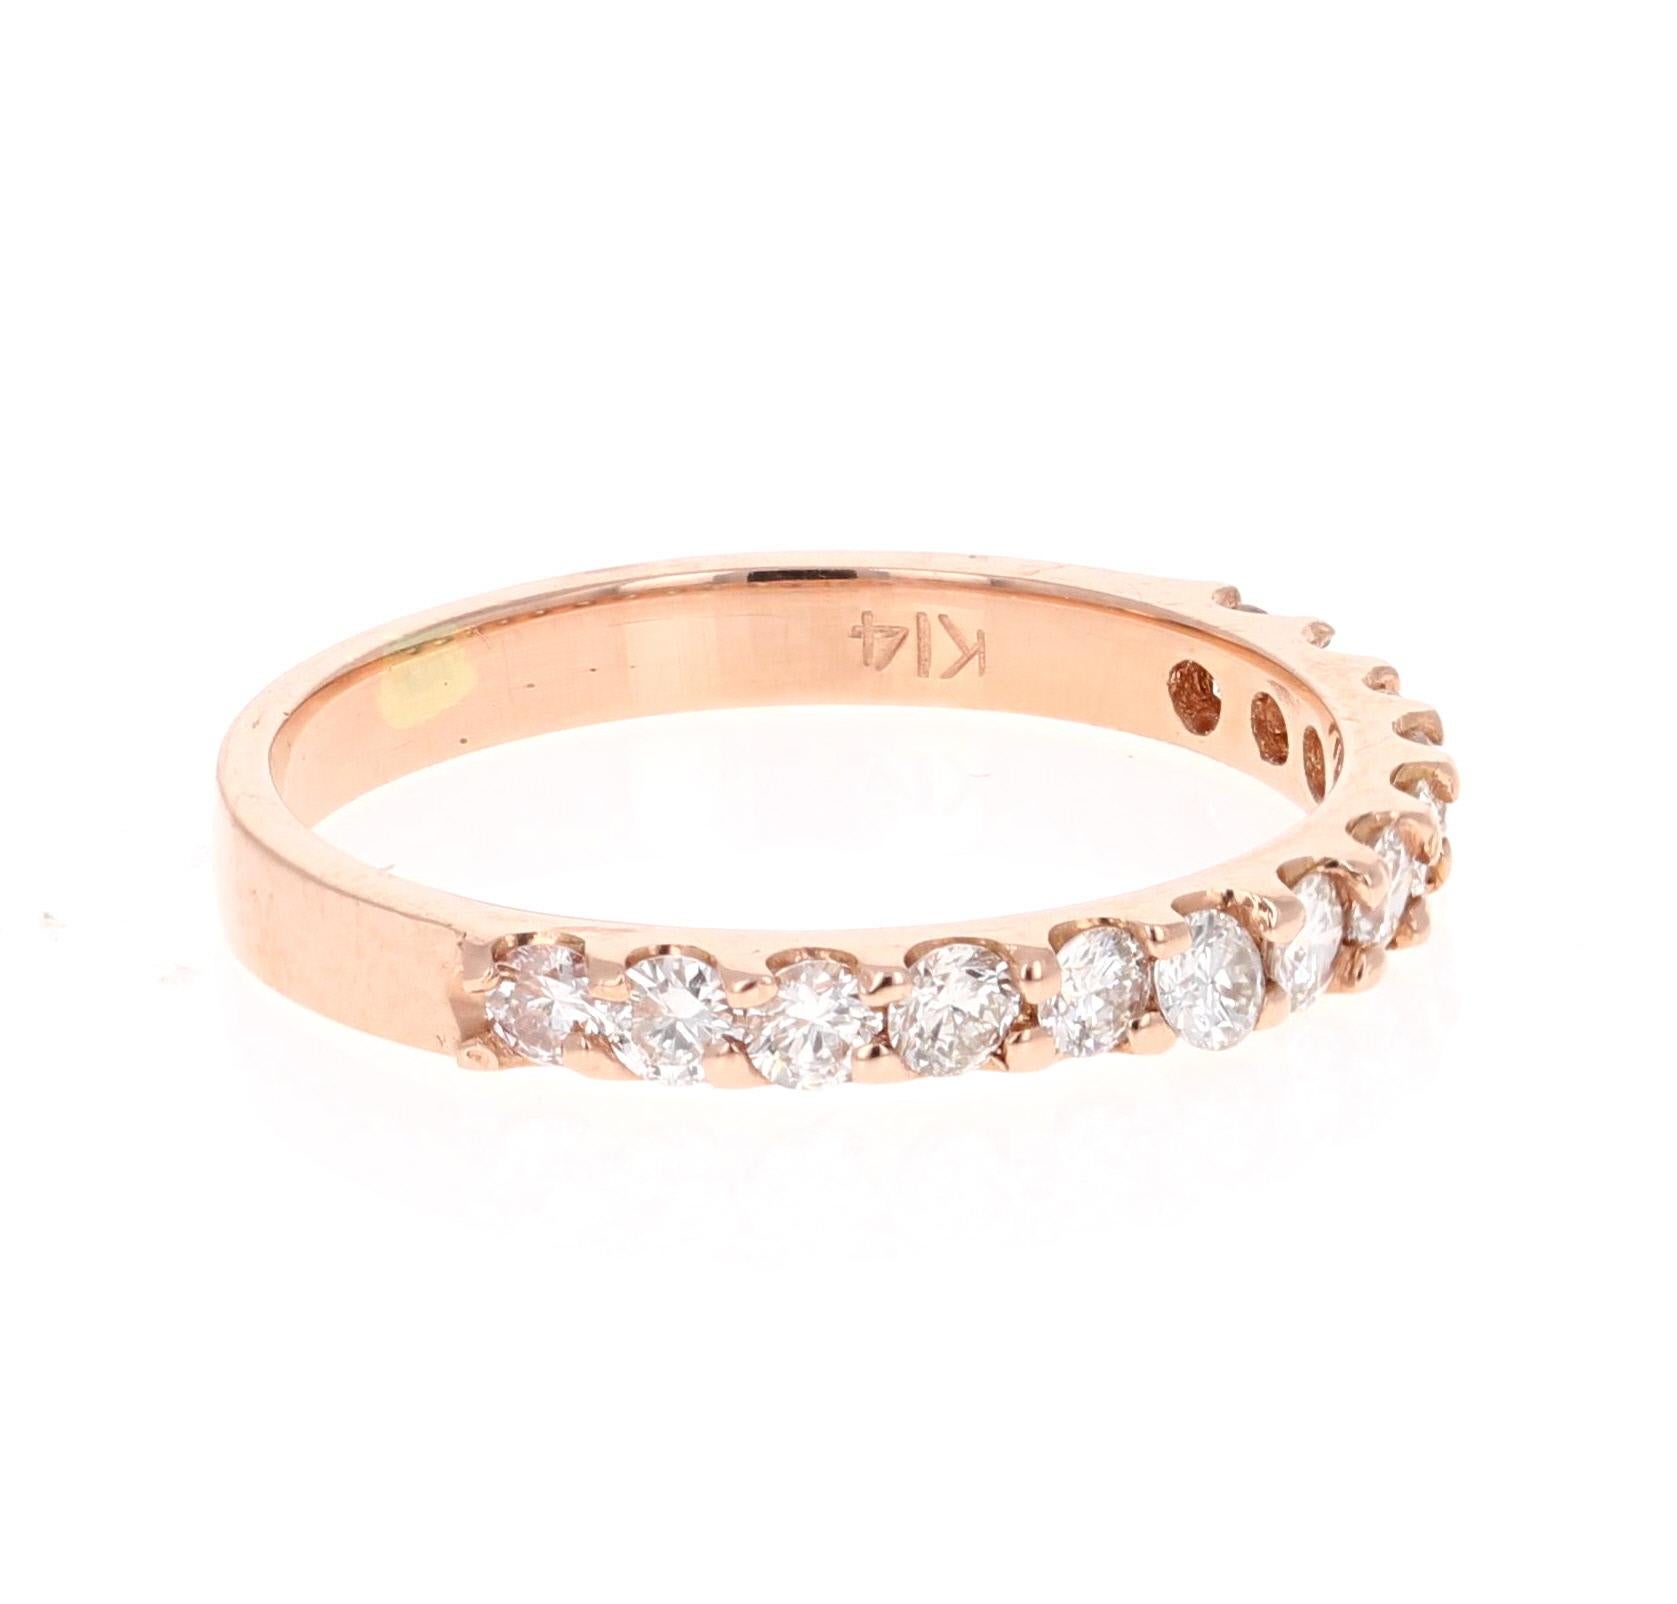 Ce bracelet comporte 13 diamants de taille ronde pesant 0,51 carats. La clarté et la couleur des diamants sont VS-H.

Fabriqué en or rose 14 carats, il pèse environ 1,7 gramme. 

La bague est une taille 6 et peut être redimensionnée sans frais